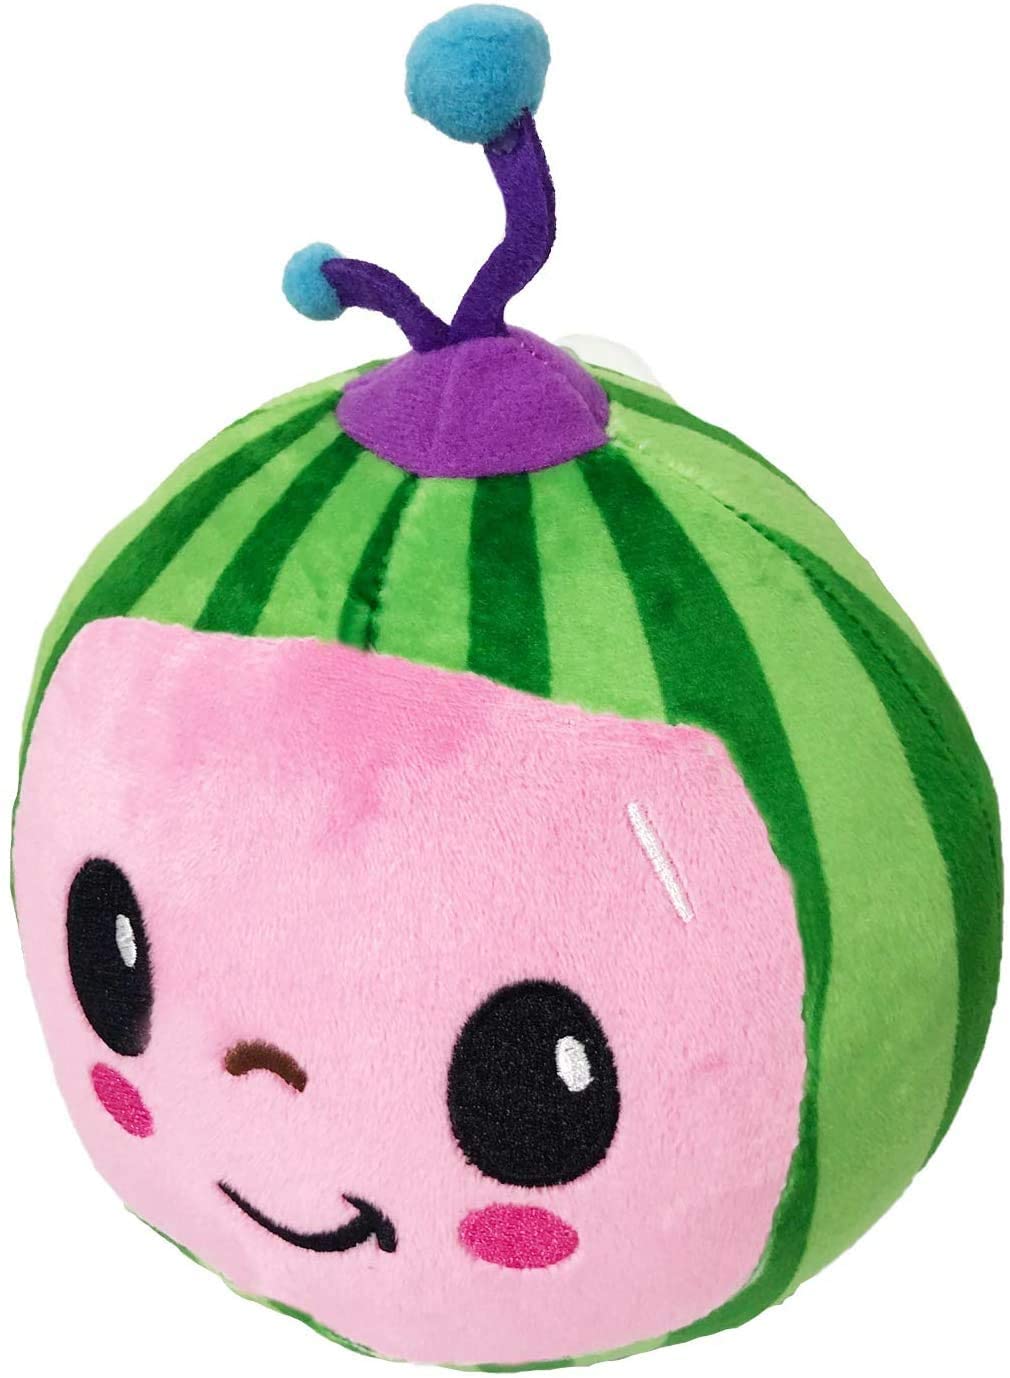 Cocomelon Watermelon Plush Toy